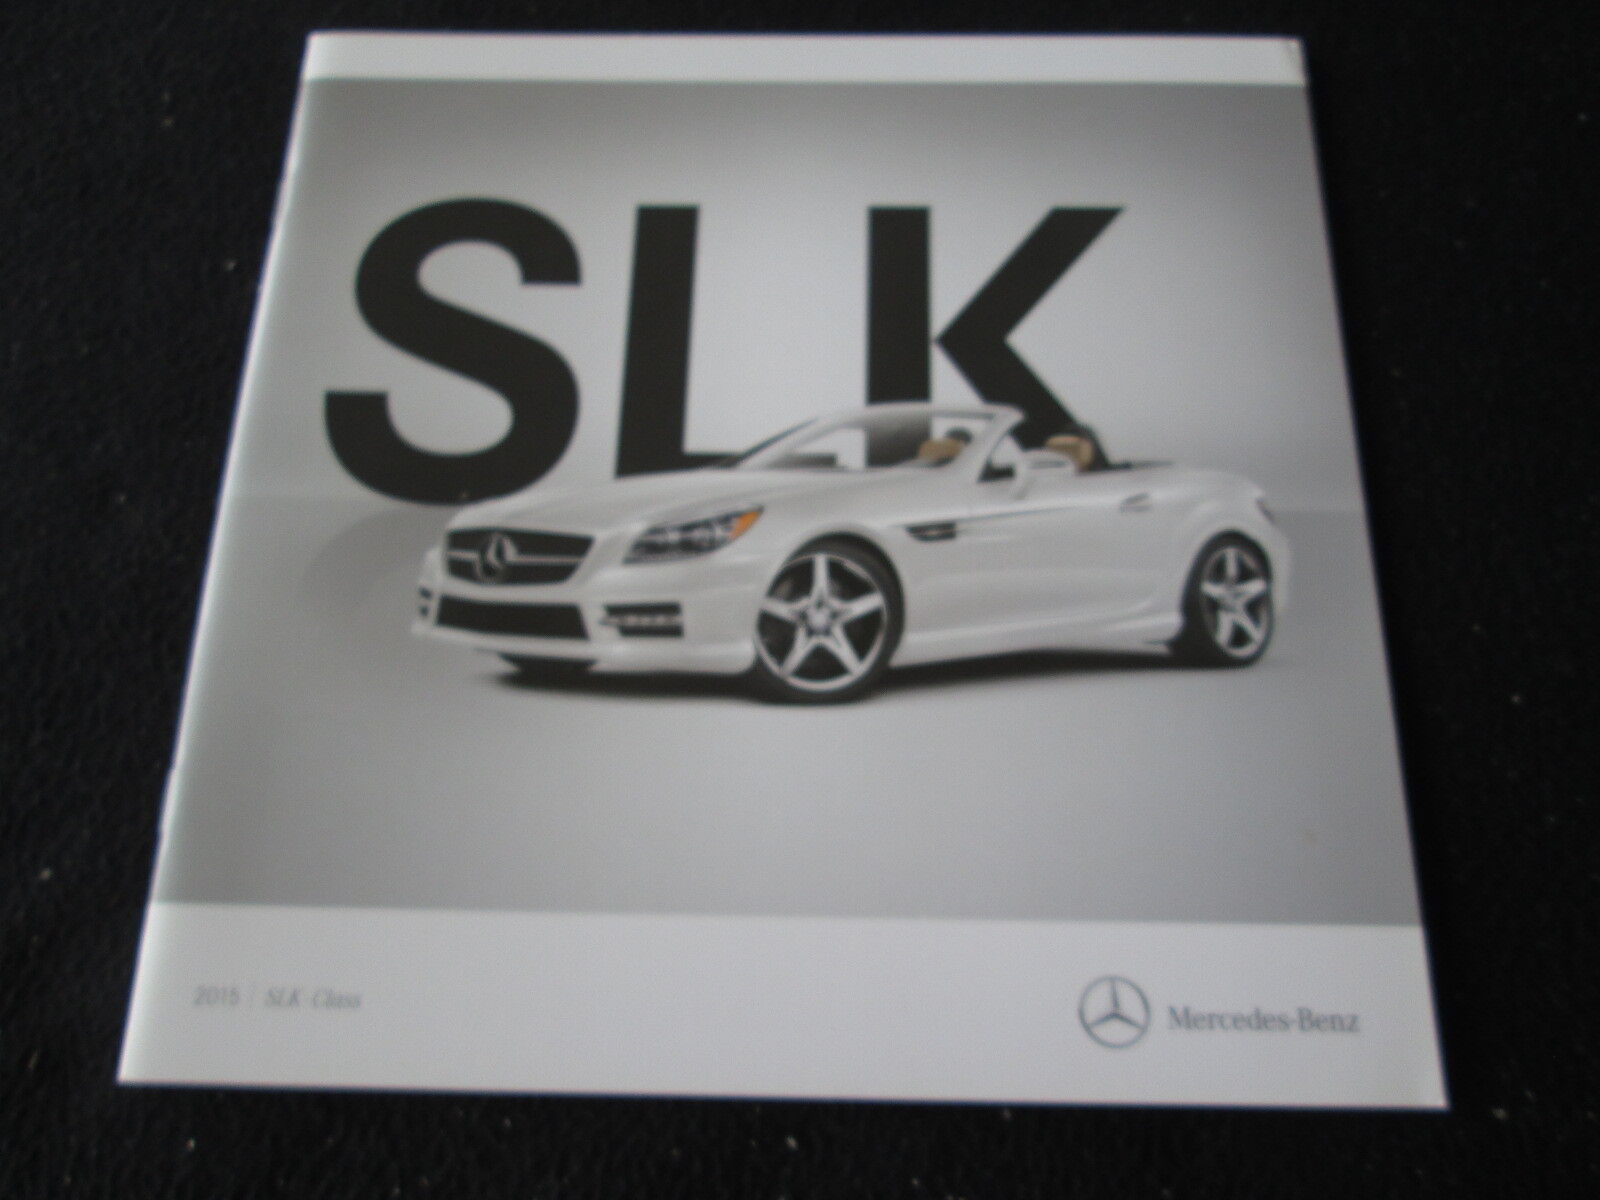 2015 Mercedes Benz Slk-class Brochure Slk250 Slk350 Sport Slk55 Amg R172 Catalog